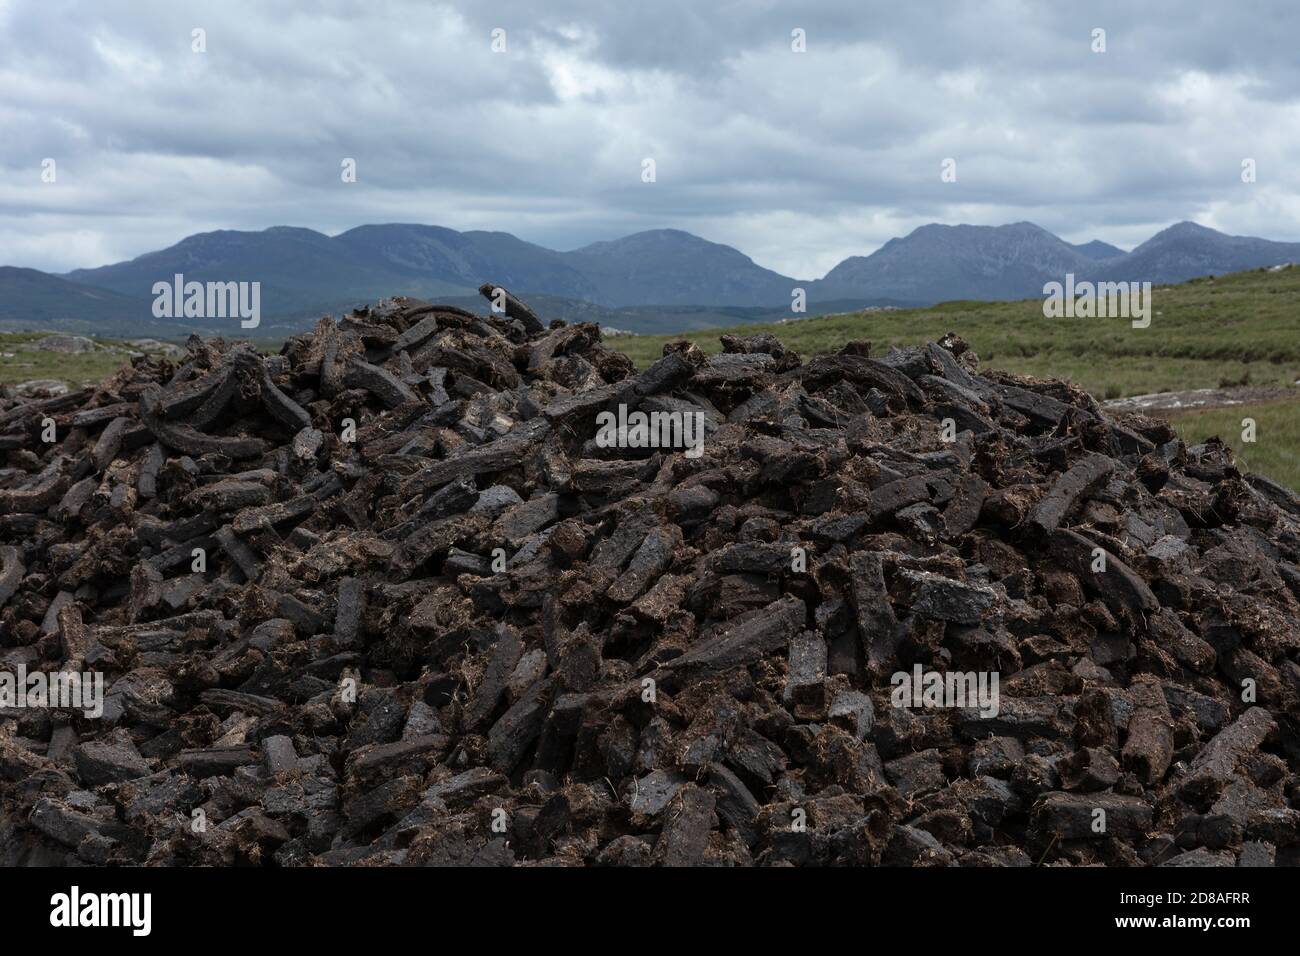 Taglio di torba (torba) a Connemara, Galway, Irlanda, con le montagne del Connemara sullo sfondo. Il tappeto erboso viene bruciato in fuochi aperti per il riscaldamento domestico. Foto Stock